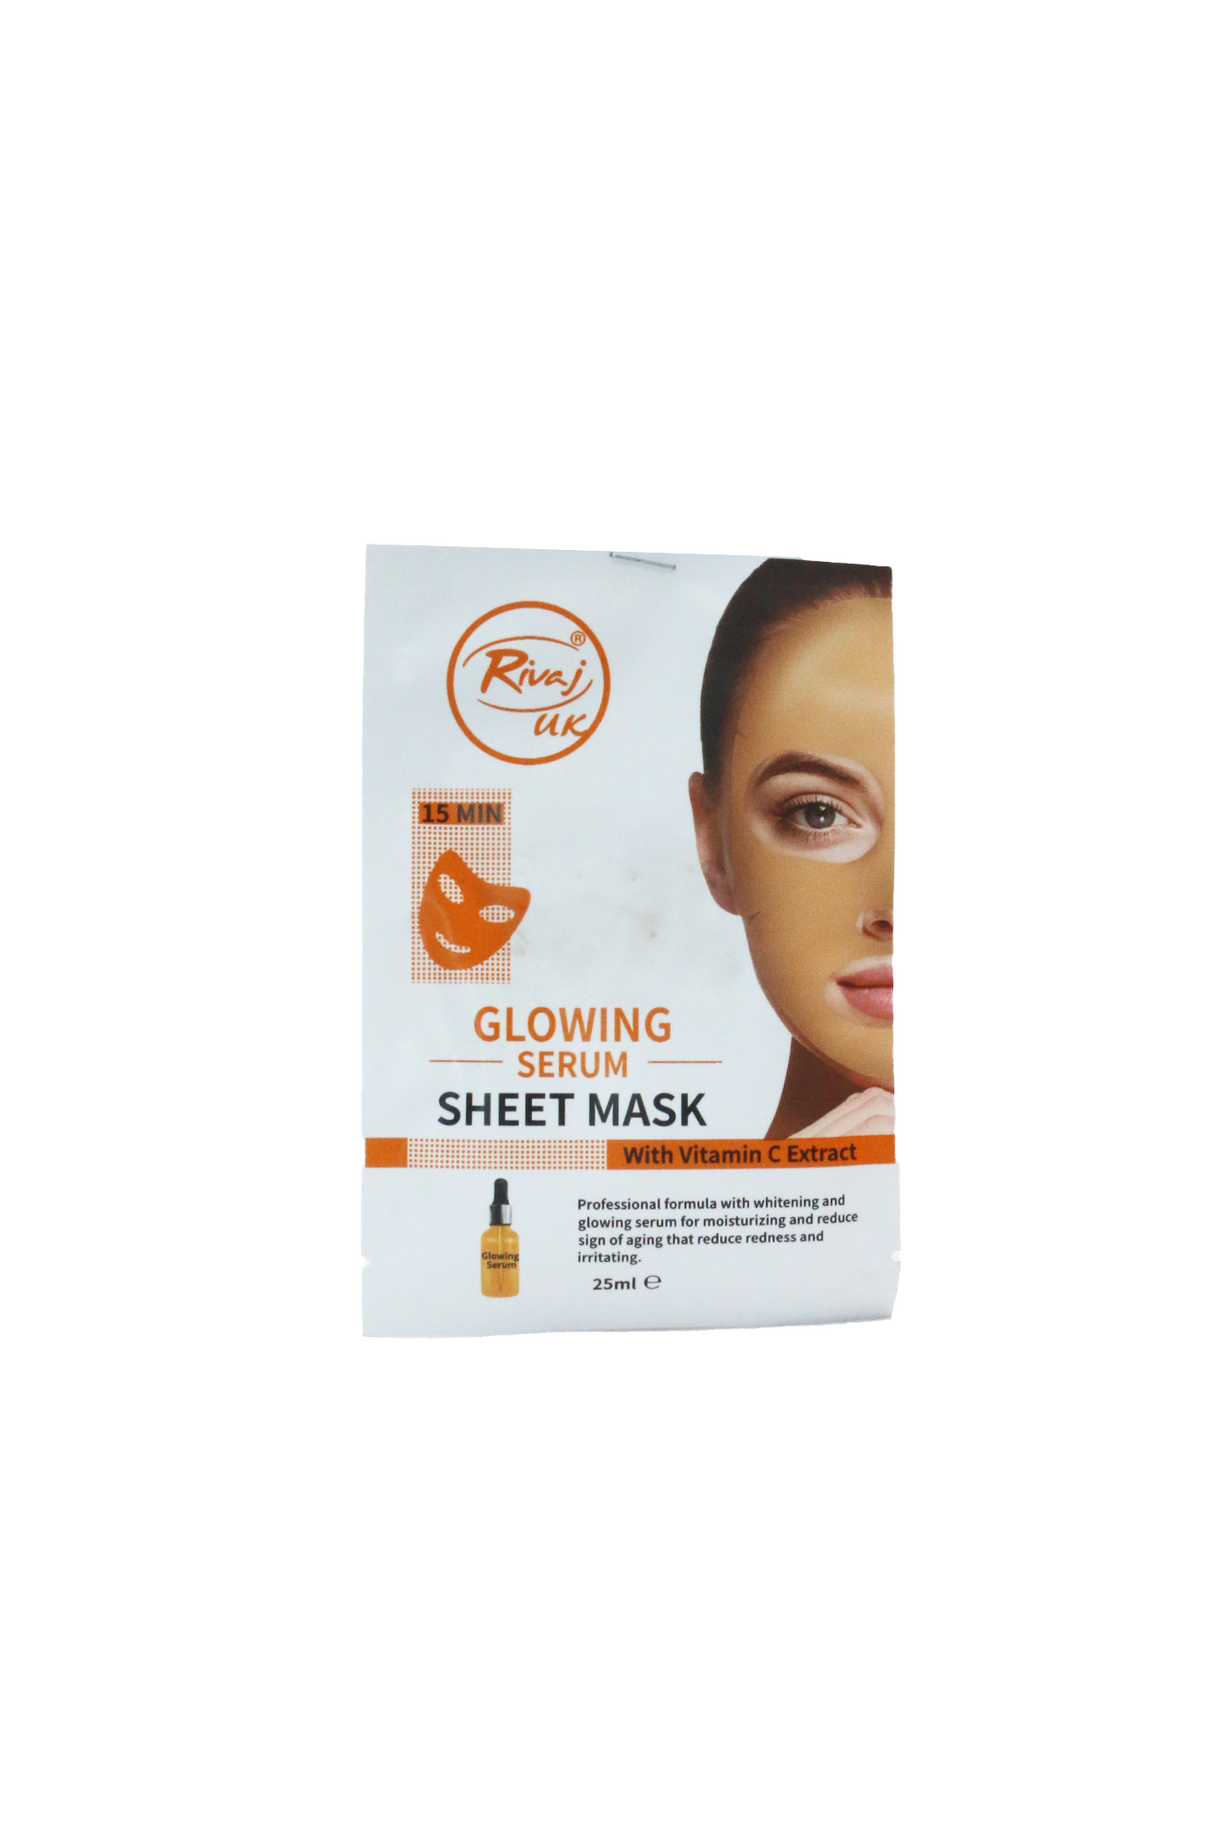 rivaj sheet mask glowing serum 25ml